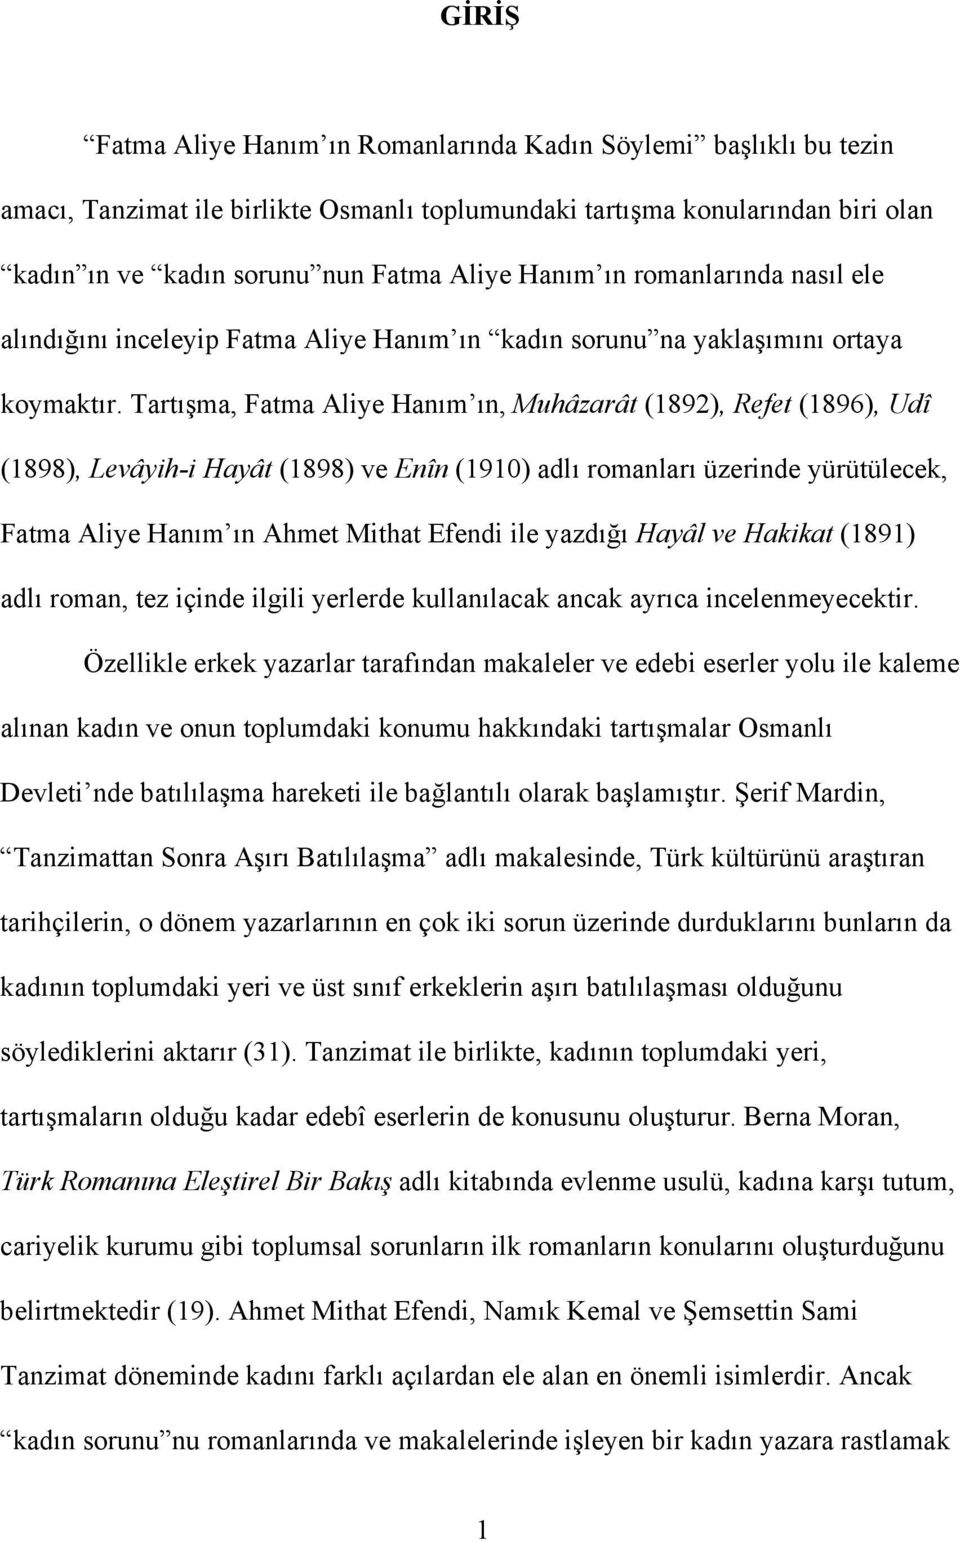 Tartışma, Fatma Aliye Hanım ın, Muhâzarât (1892), Refet (1896), Udî (1898), Levâyih-i Hayât (1898) ve Enîn (1910) adlı romanları üzerinde yürütülecek, Fatma Aliye Hanım ın Ahmet Mithat Efendi ile